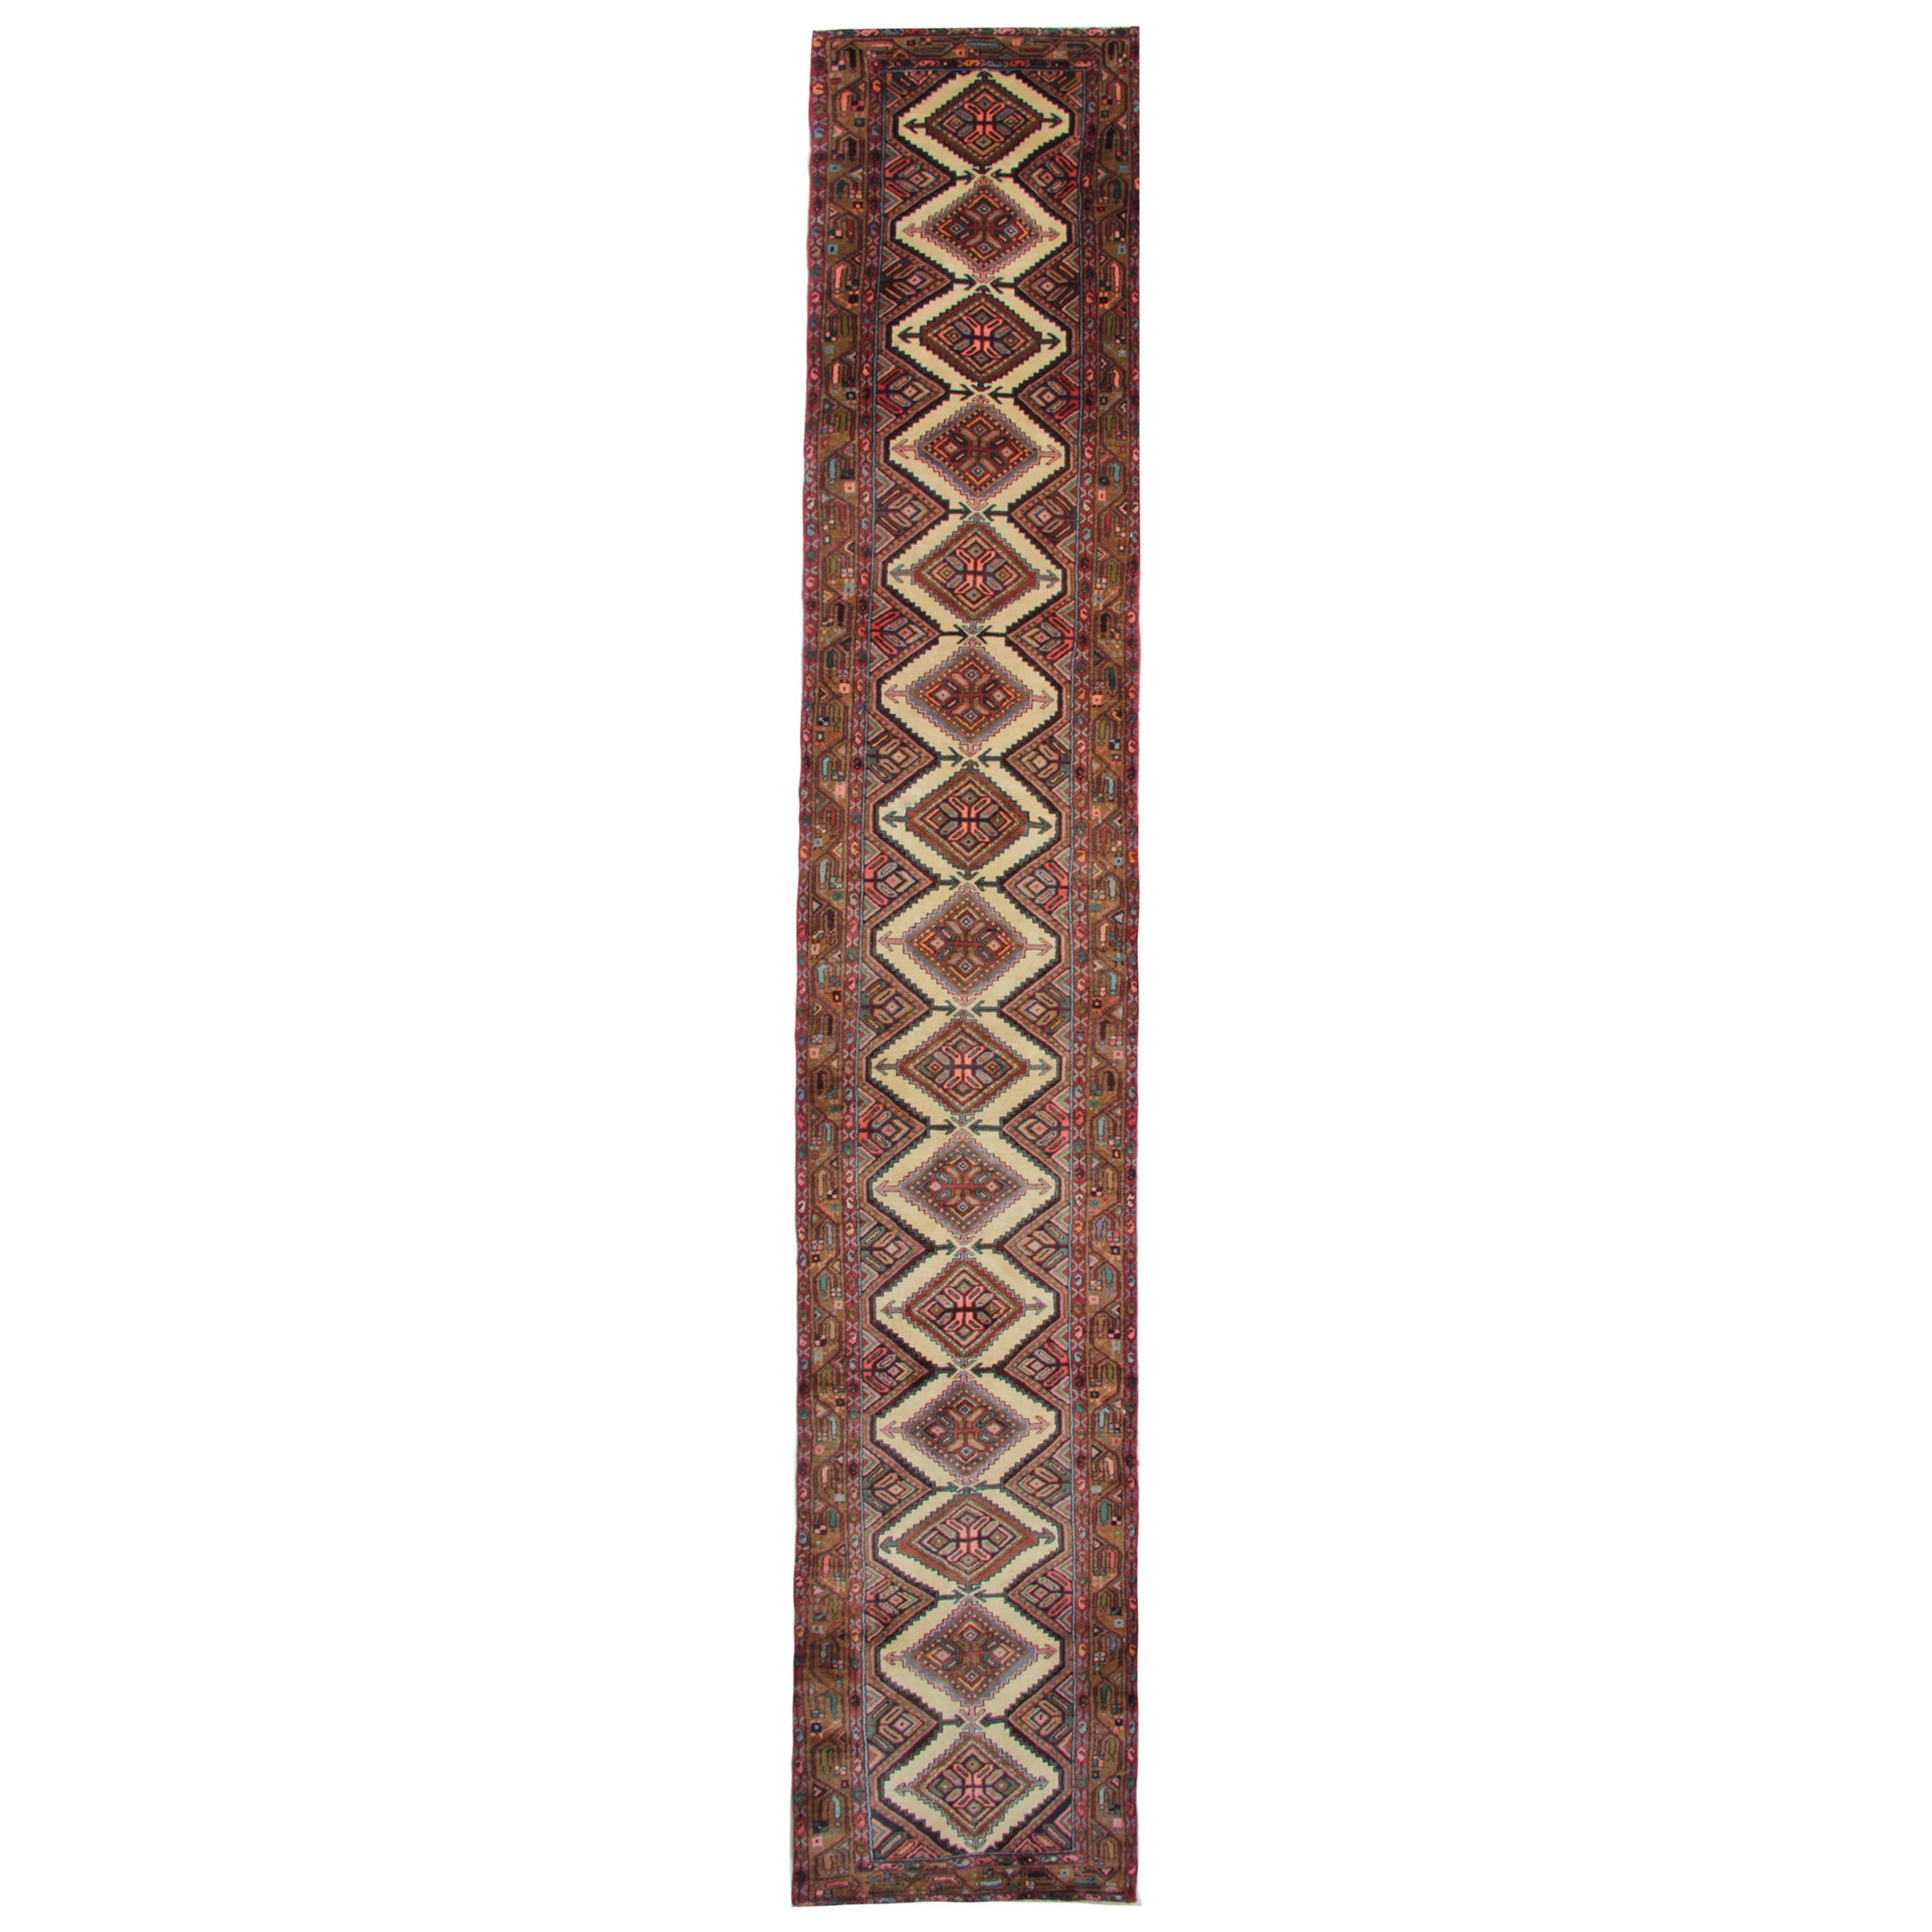 Handmade Carpet Runner Oriental Wool Stair Runner Rug, Vintage Rugs